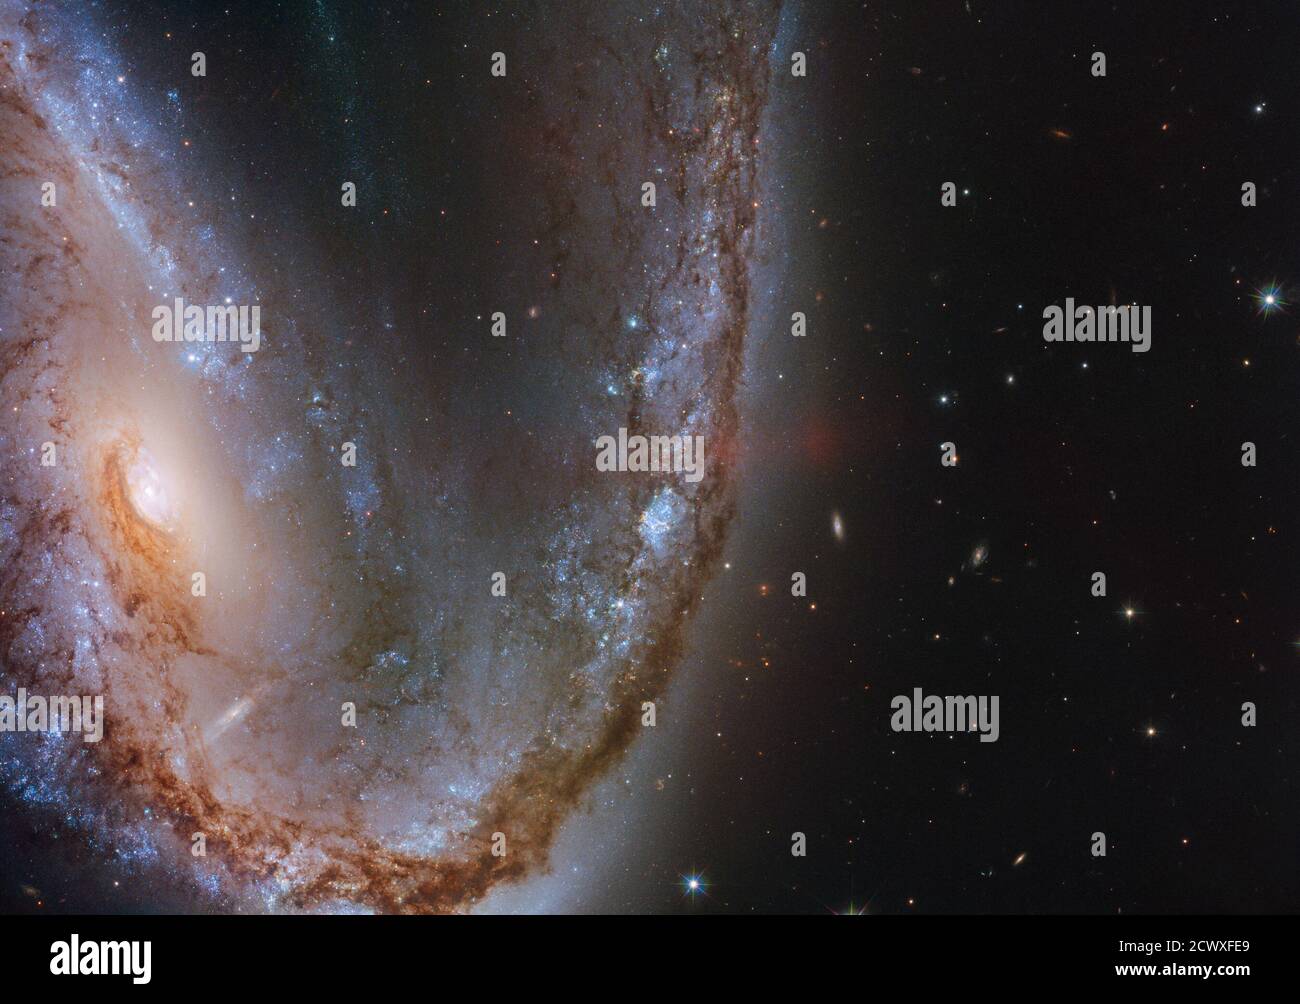 Hubble Hooks Supernova Host Galaxy cette image du télescope spatial Hubble NASA/ESA présente la spectaculaire galaxie NGC 2442, surnommée la galaxie Meathook en raison de sa forme extrêmement asymétrique et irrégulière. Cette galaxie a été l'hôte d'une explosion de supernova repérée en mars 2015, connue sous le nom de SN 2015F, qui a été créée par une étoile naine blanche. La naine blanche faisait partie d'un système binaire d'étoiles et siphonne la masse de son compagnon, devenant finalement trop gourmande et prenant sur plus qu'elle ne pourrait gérer. Cette étoile déséquilibrée et déclenché une fusion nucléaire folle qui a finalement conduit à un intugel Banque D'Images